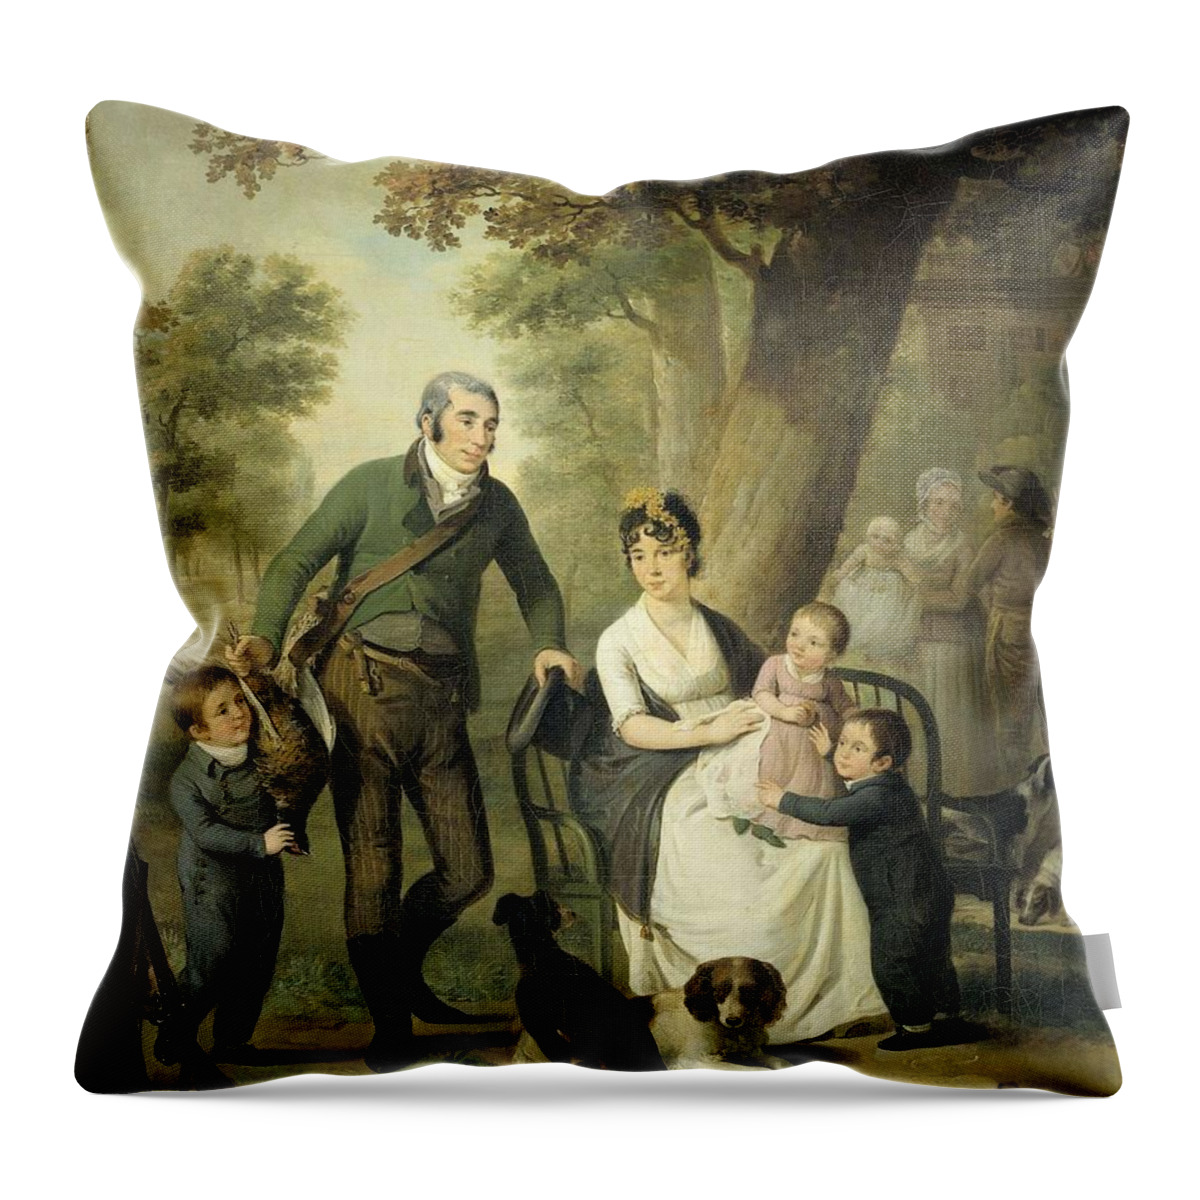 Adriaan De Lelie Throw Pillow featuring the painting Jonkheer Gysbert Carel Rutger Reinier van Brienen van Ramerus-1771-1821-, with his Wife and four ... by Adriaan de Lelie